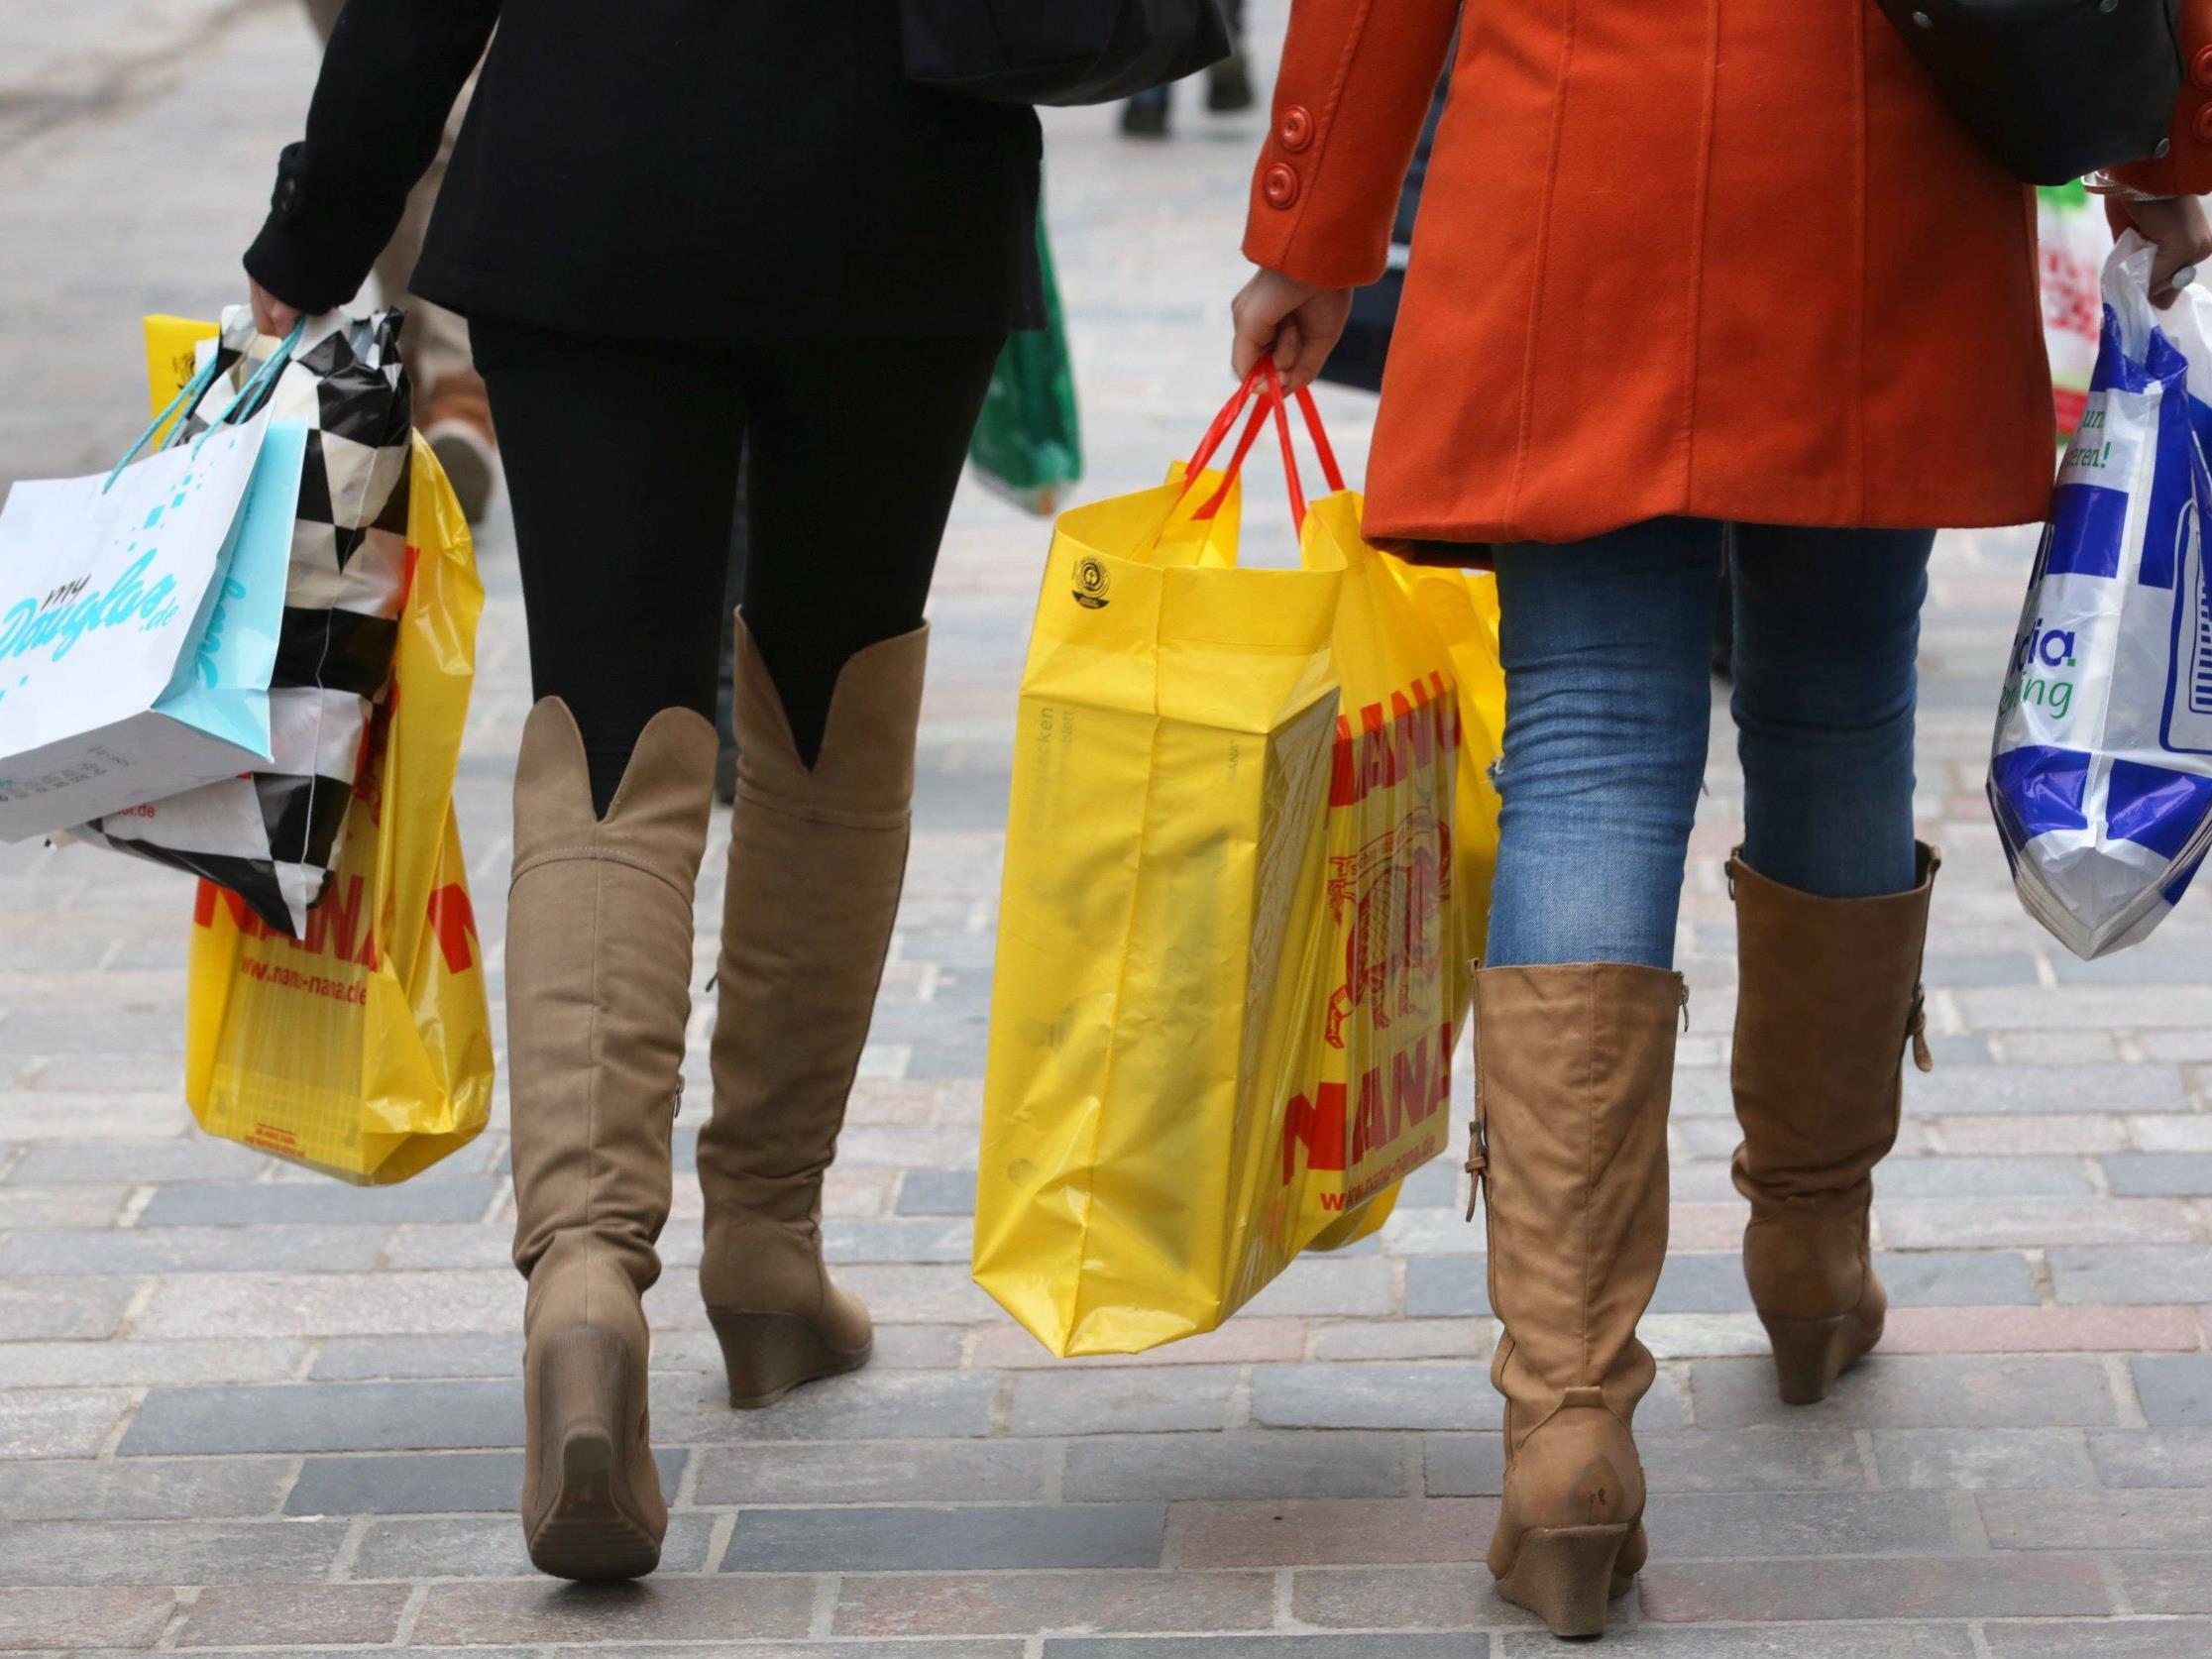 Befürworter der Sonntagsöffnung sehen bessere Einkaufsmöglichkeiten, aber Handel ist skeptisch.